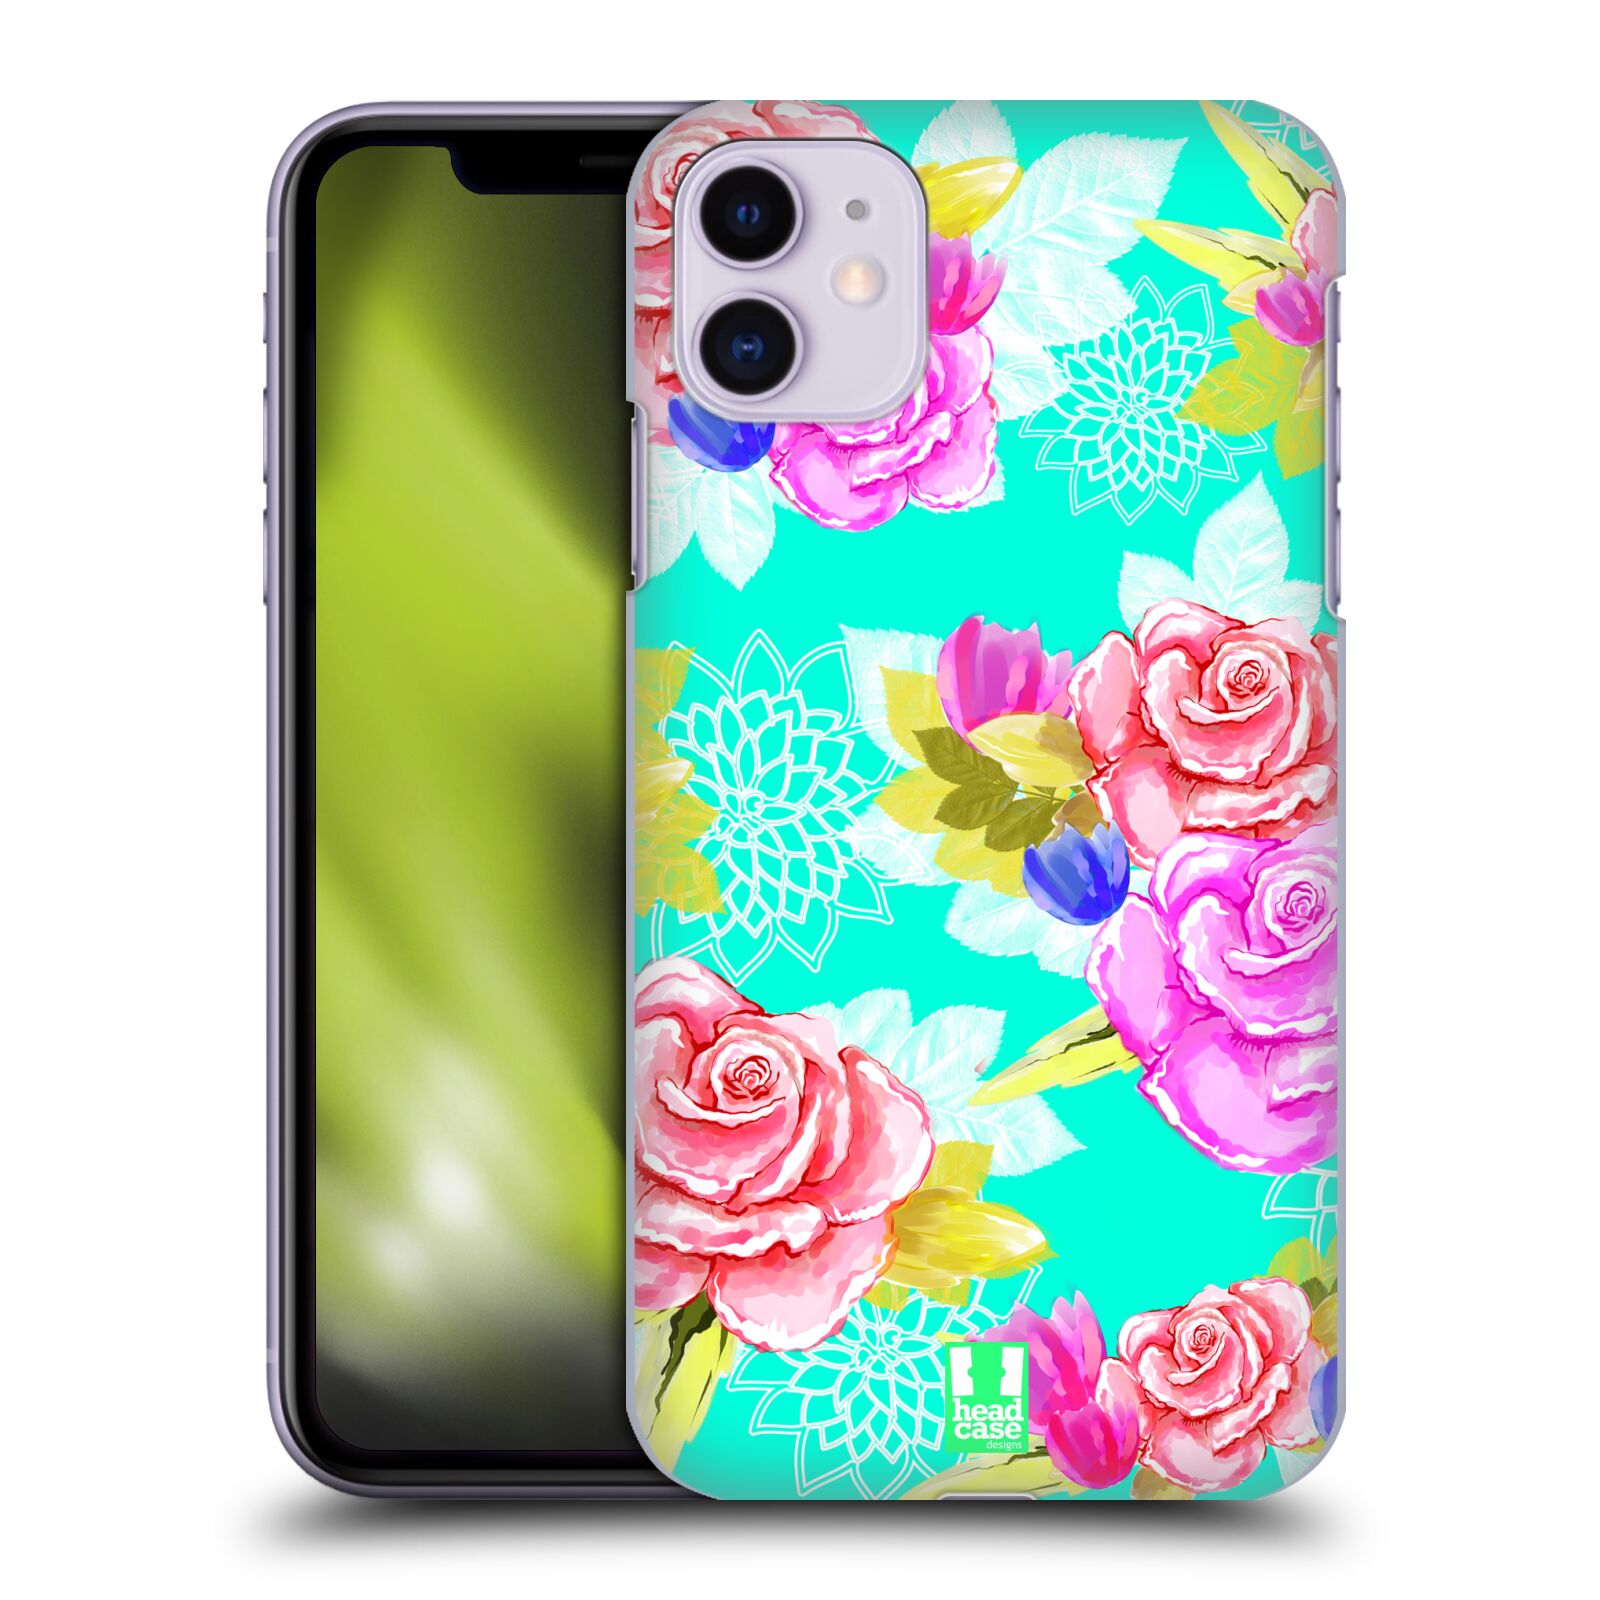 Pouzdro na mobil Apple Iphone 11 - HEAD CASE - vzor Malované květiny barevné AQUA MODRÁ